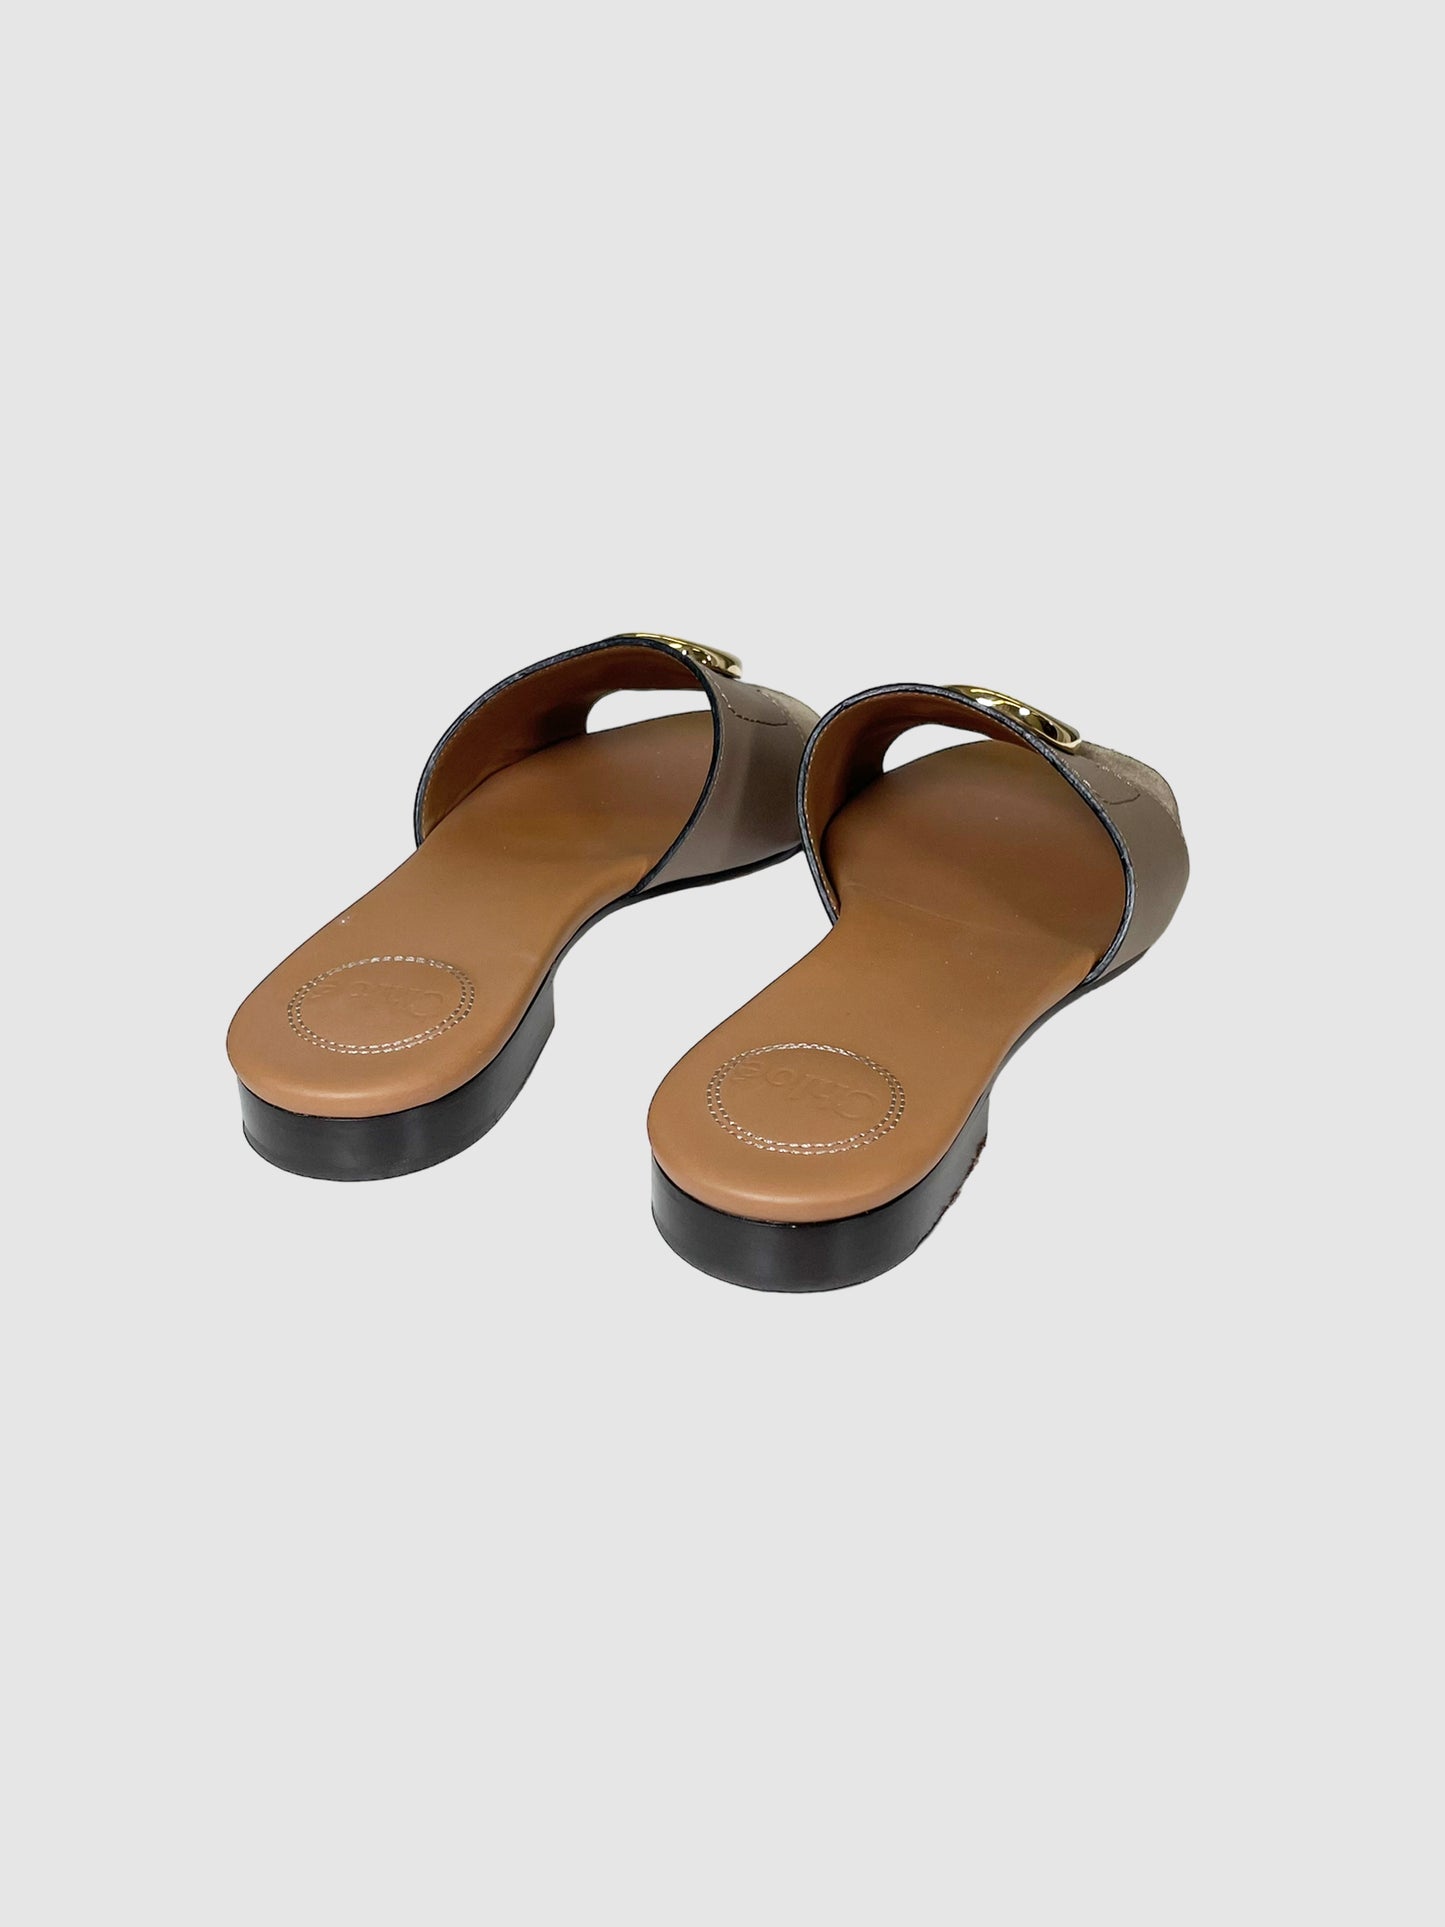 Chloé C Flat Leather Slide Sandals - Size 38.5